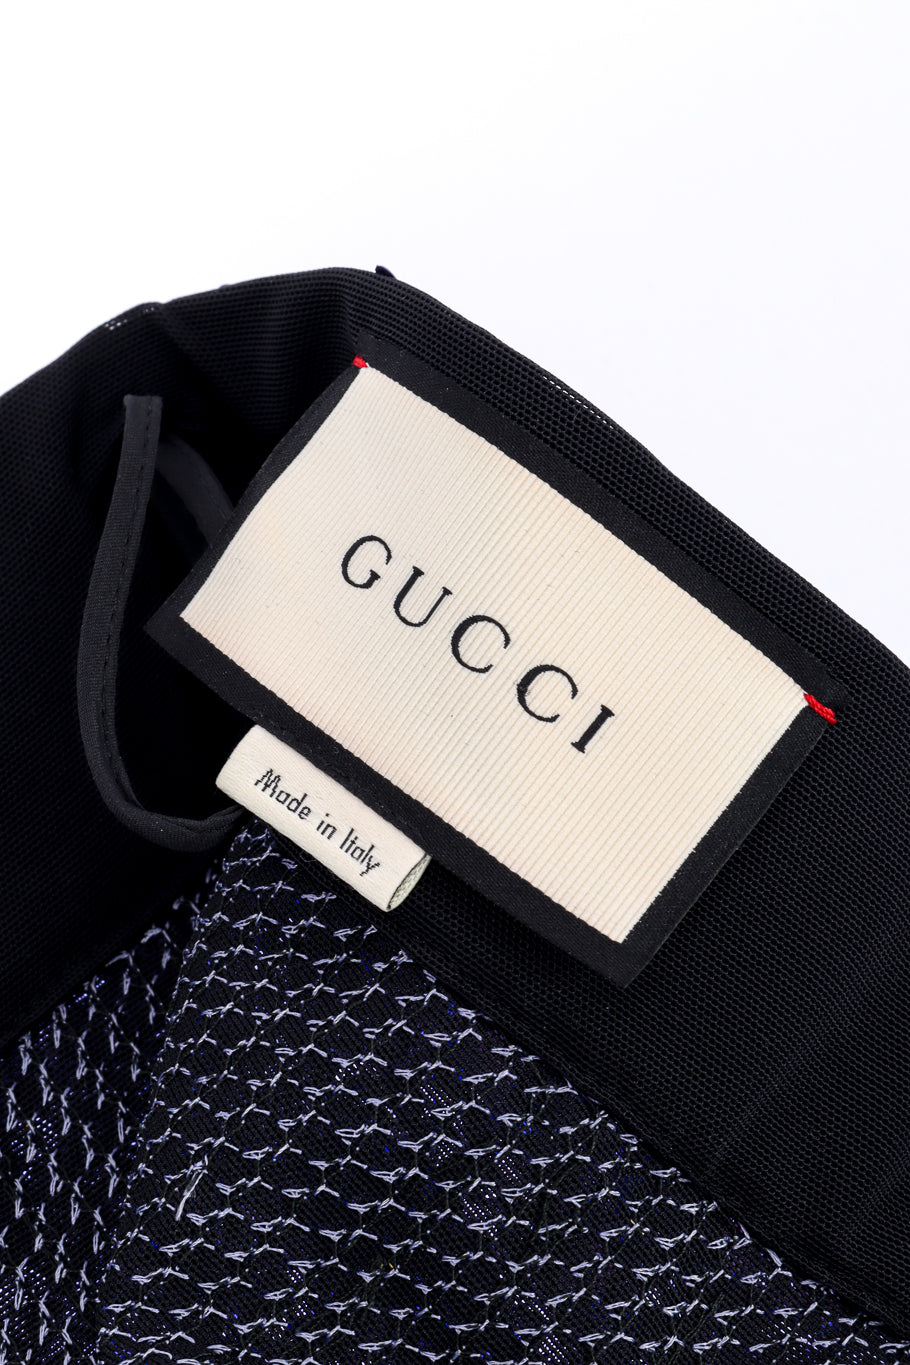 2017 S/S Sequin Cigarette Pant by Gucci label @recessla